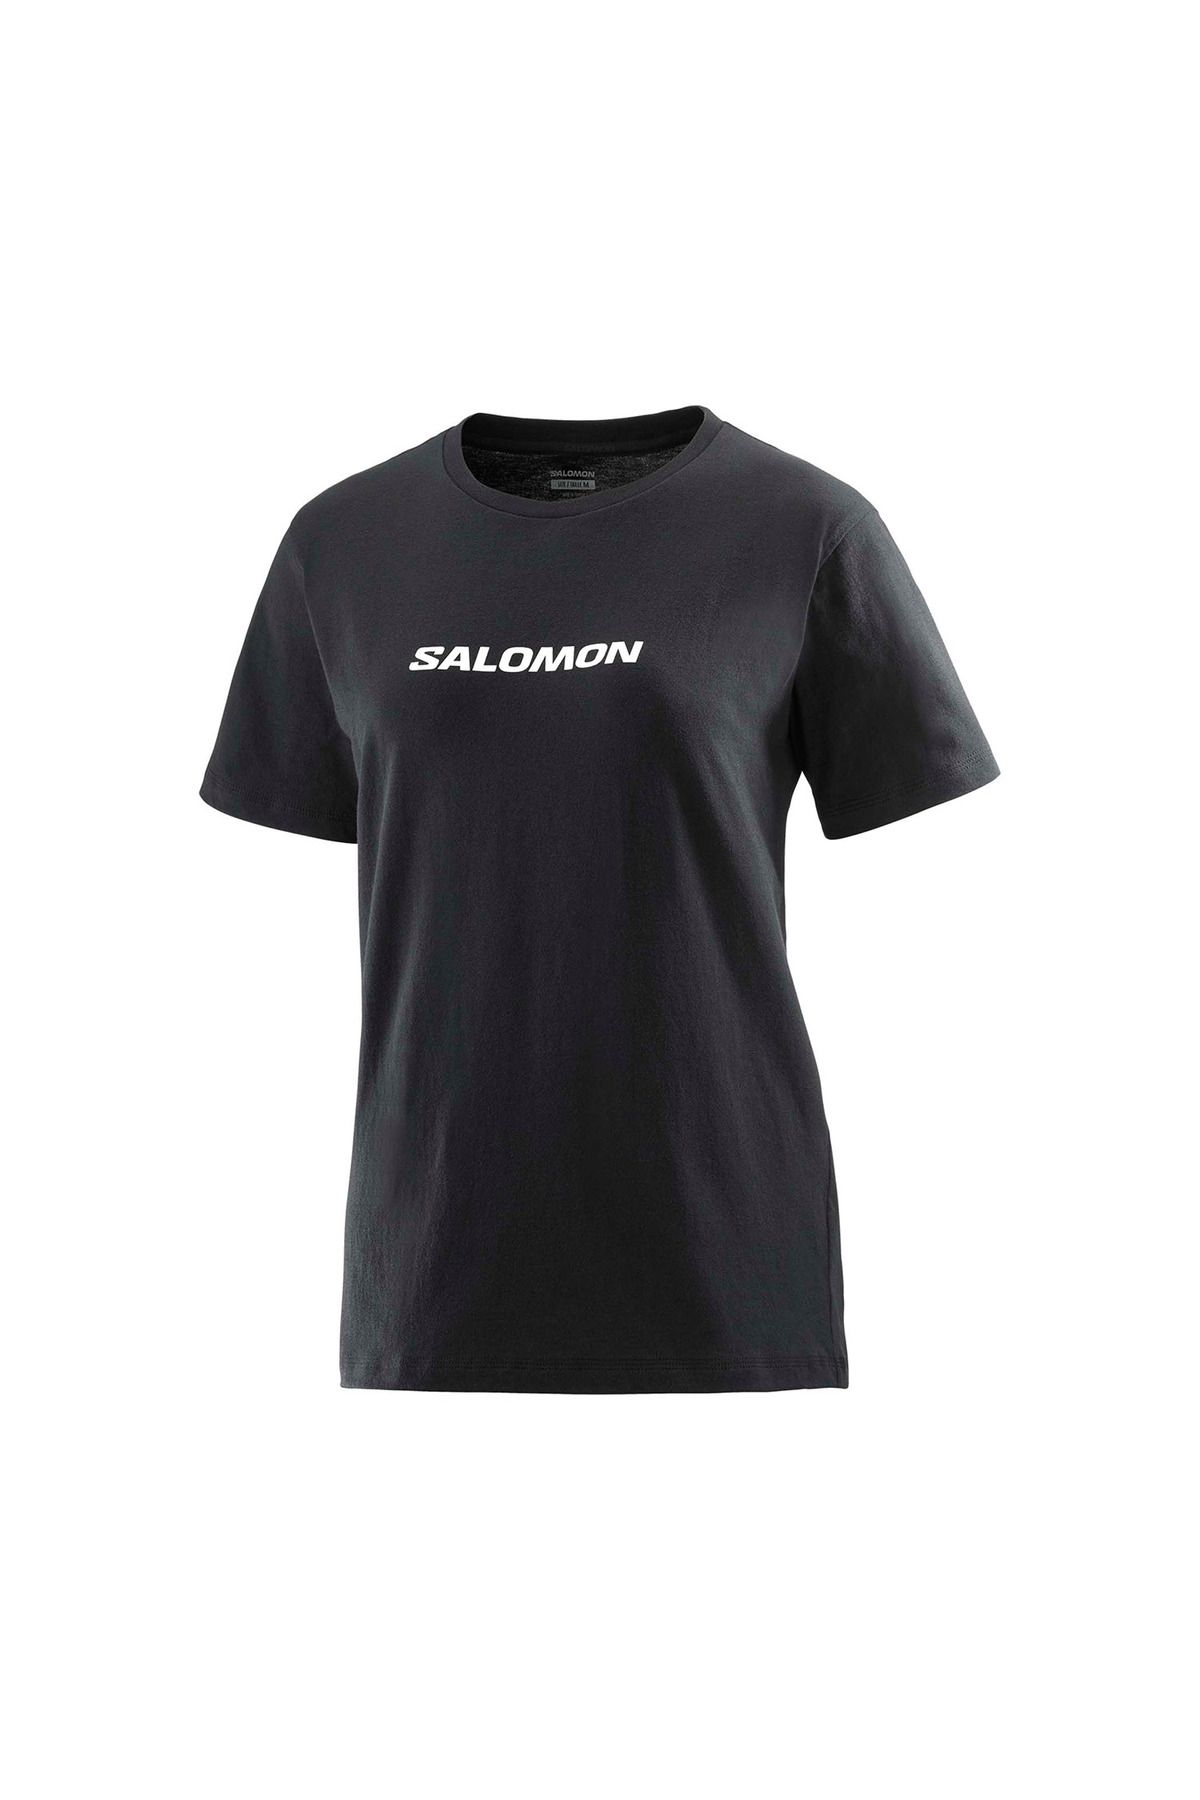 Salomon Logo Kadın Tişört